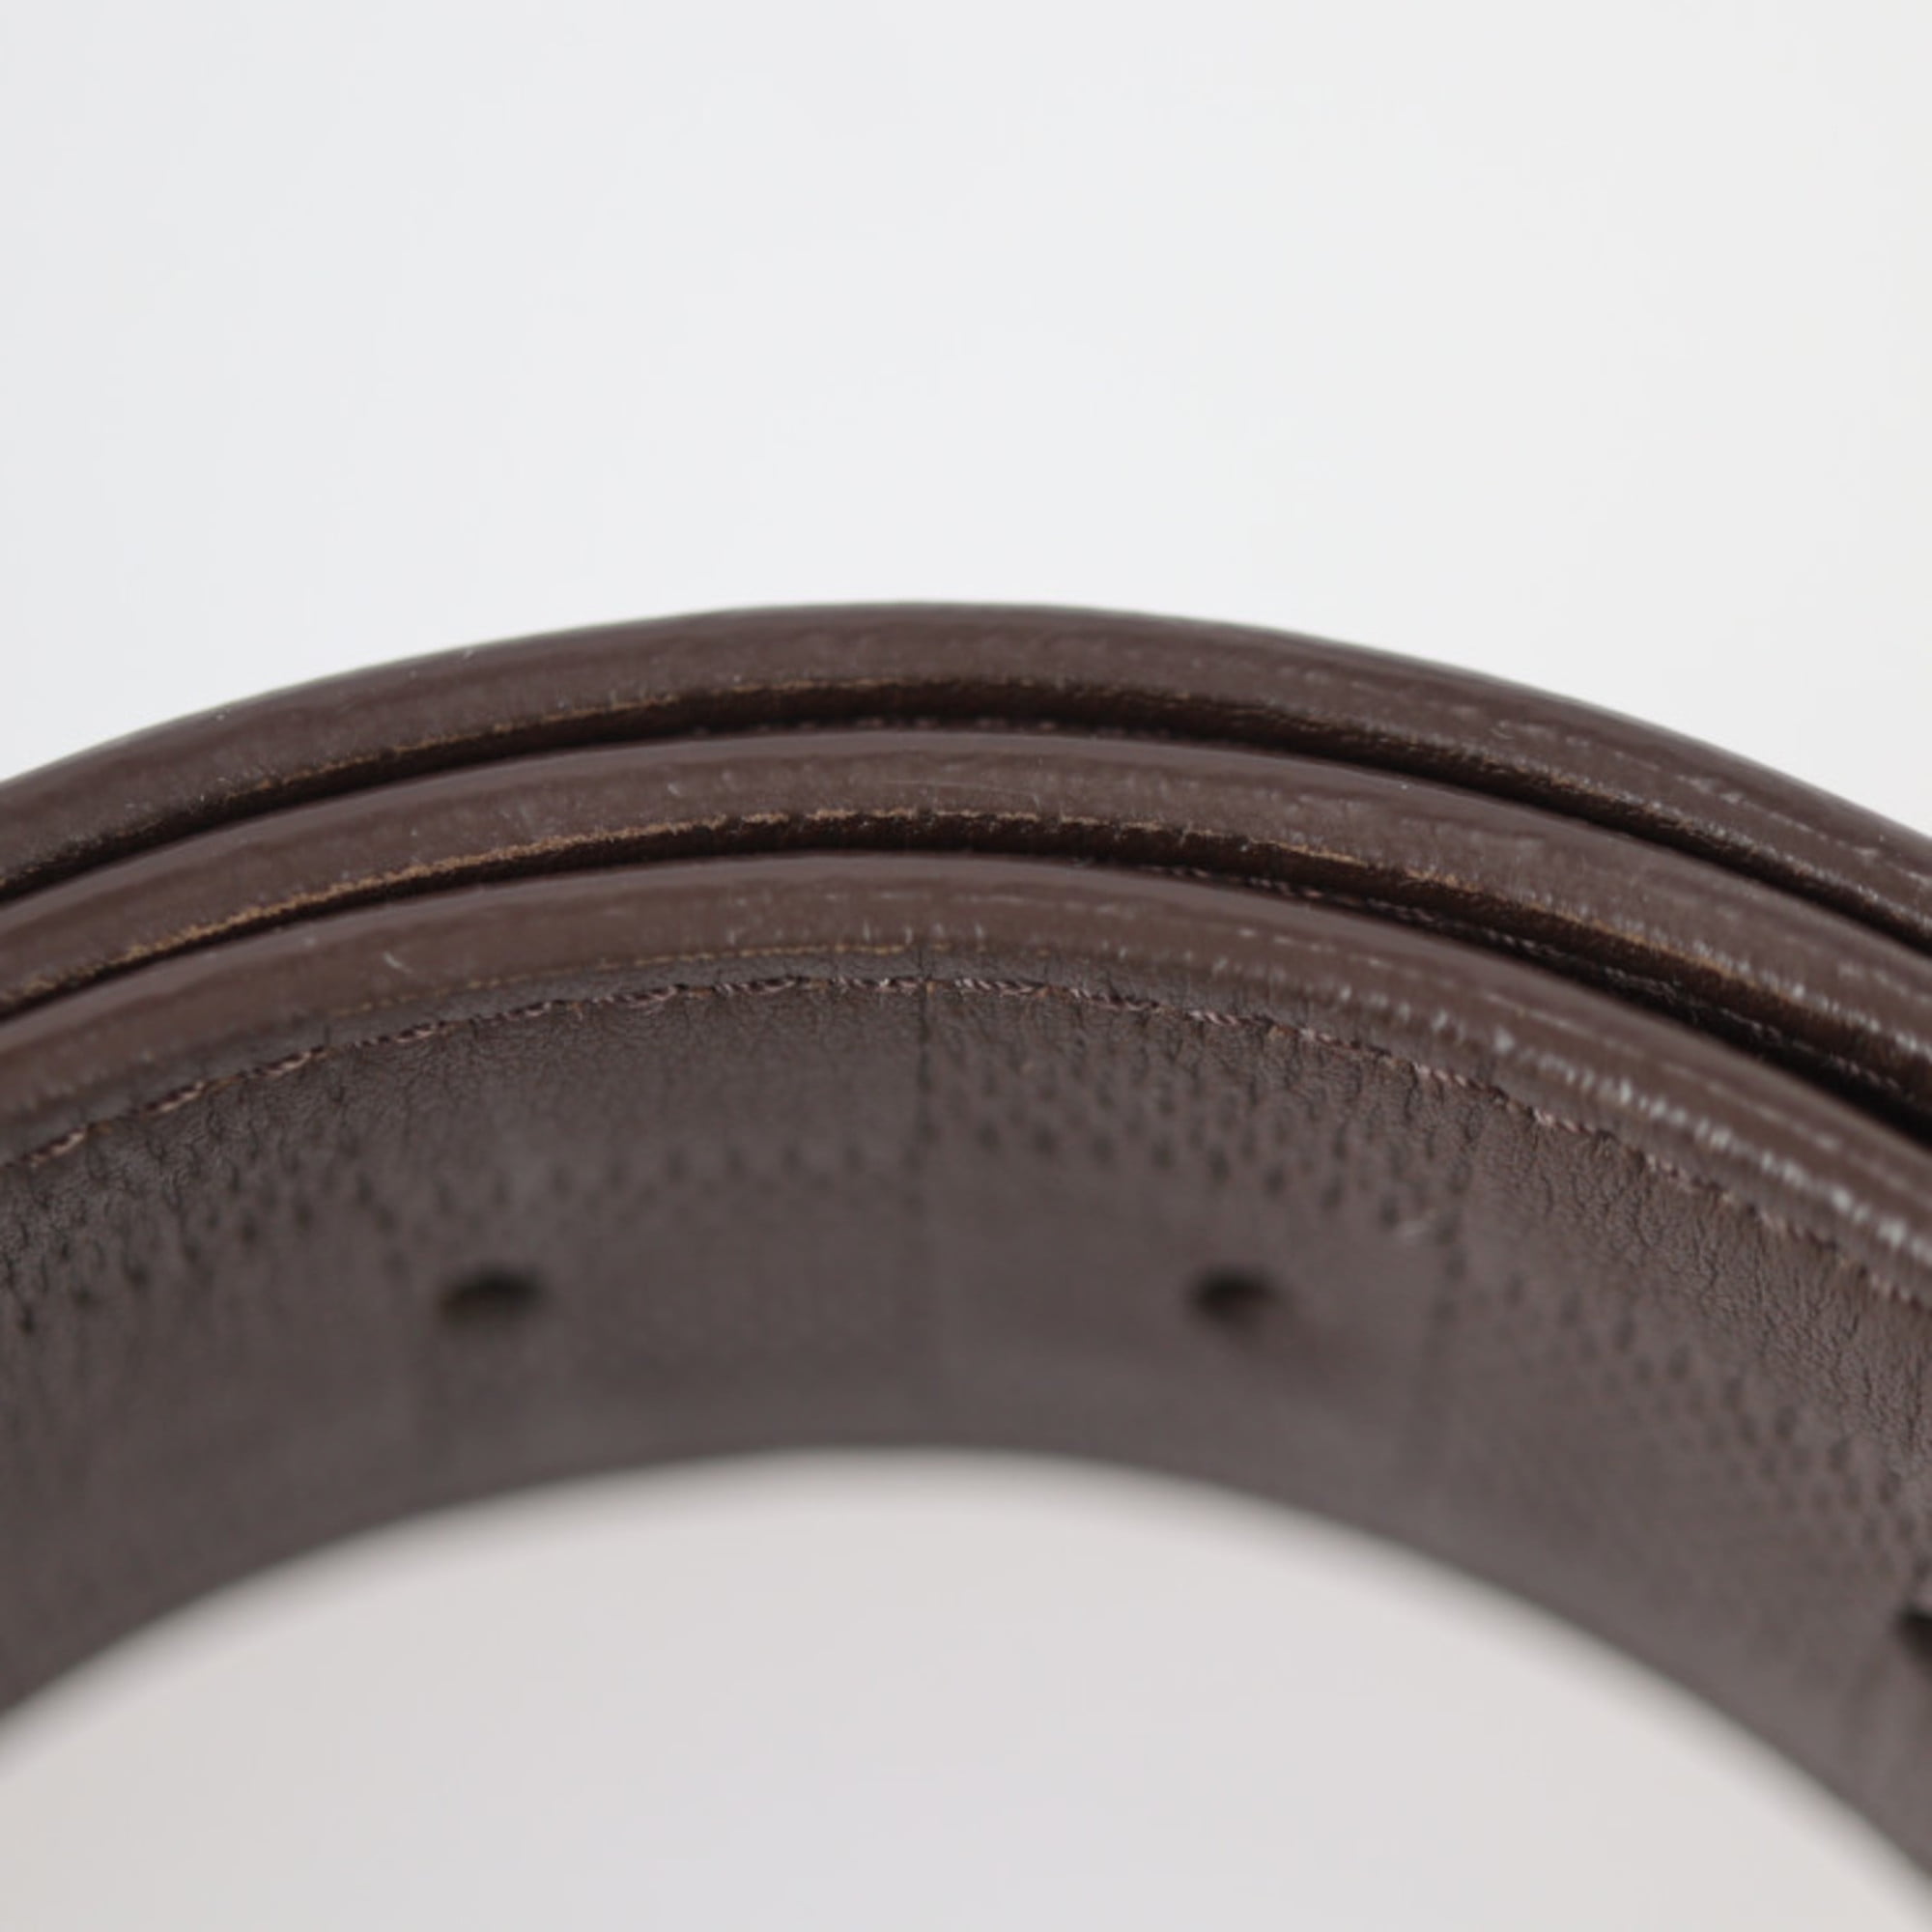 NUEVO cinturón Louis Vuitton N1010U crea tu propio cinturón LV con hebilla  N10004 marrón/negro